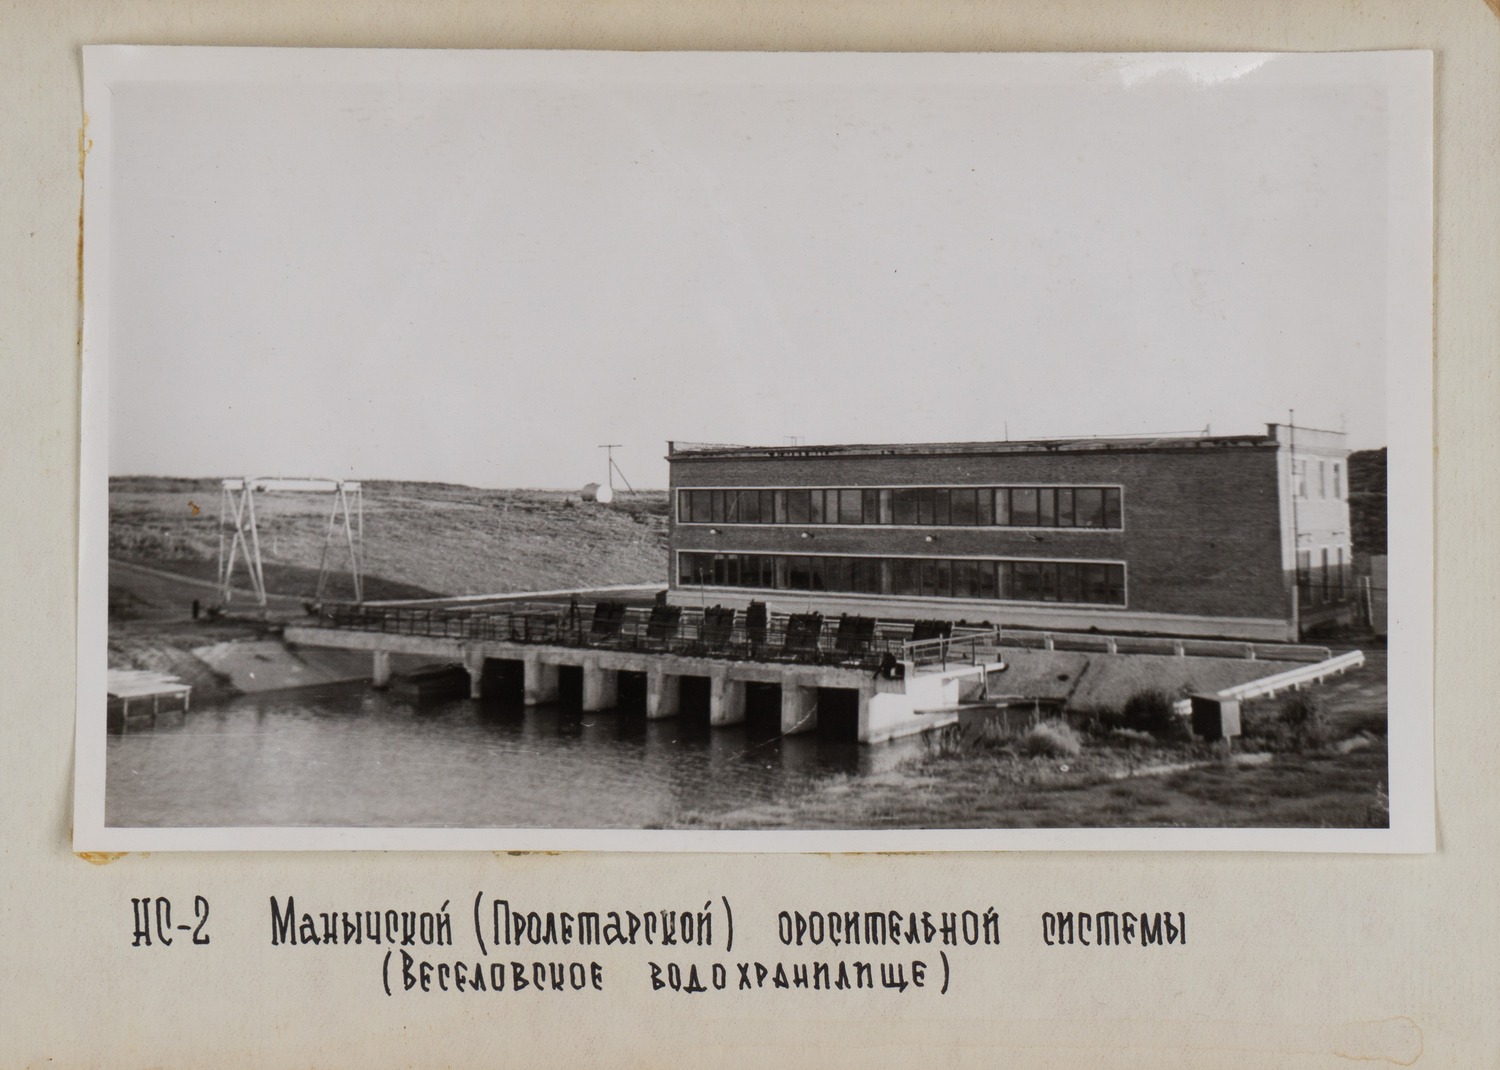 Альбом (19 фотографий) «Оросительные системы. ГРЭС». СССР, 1970-е годы.